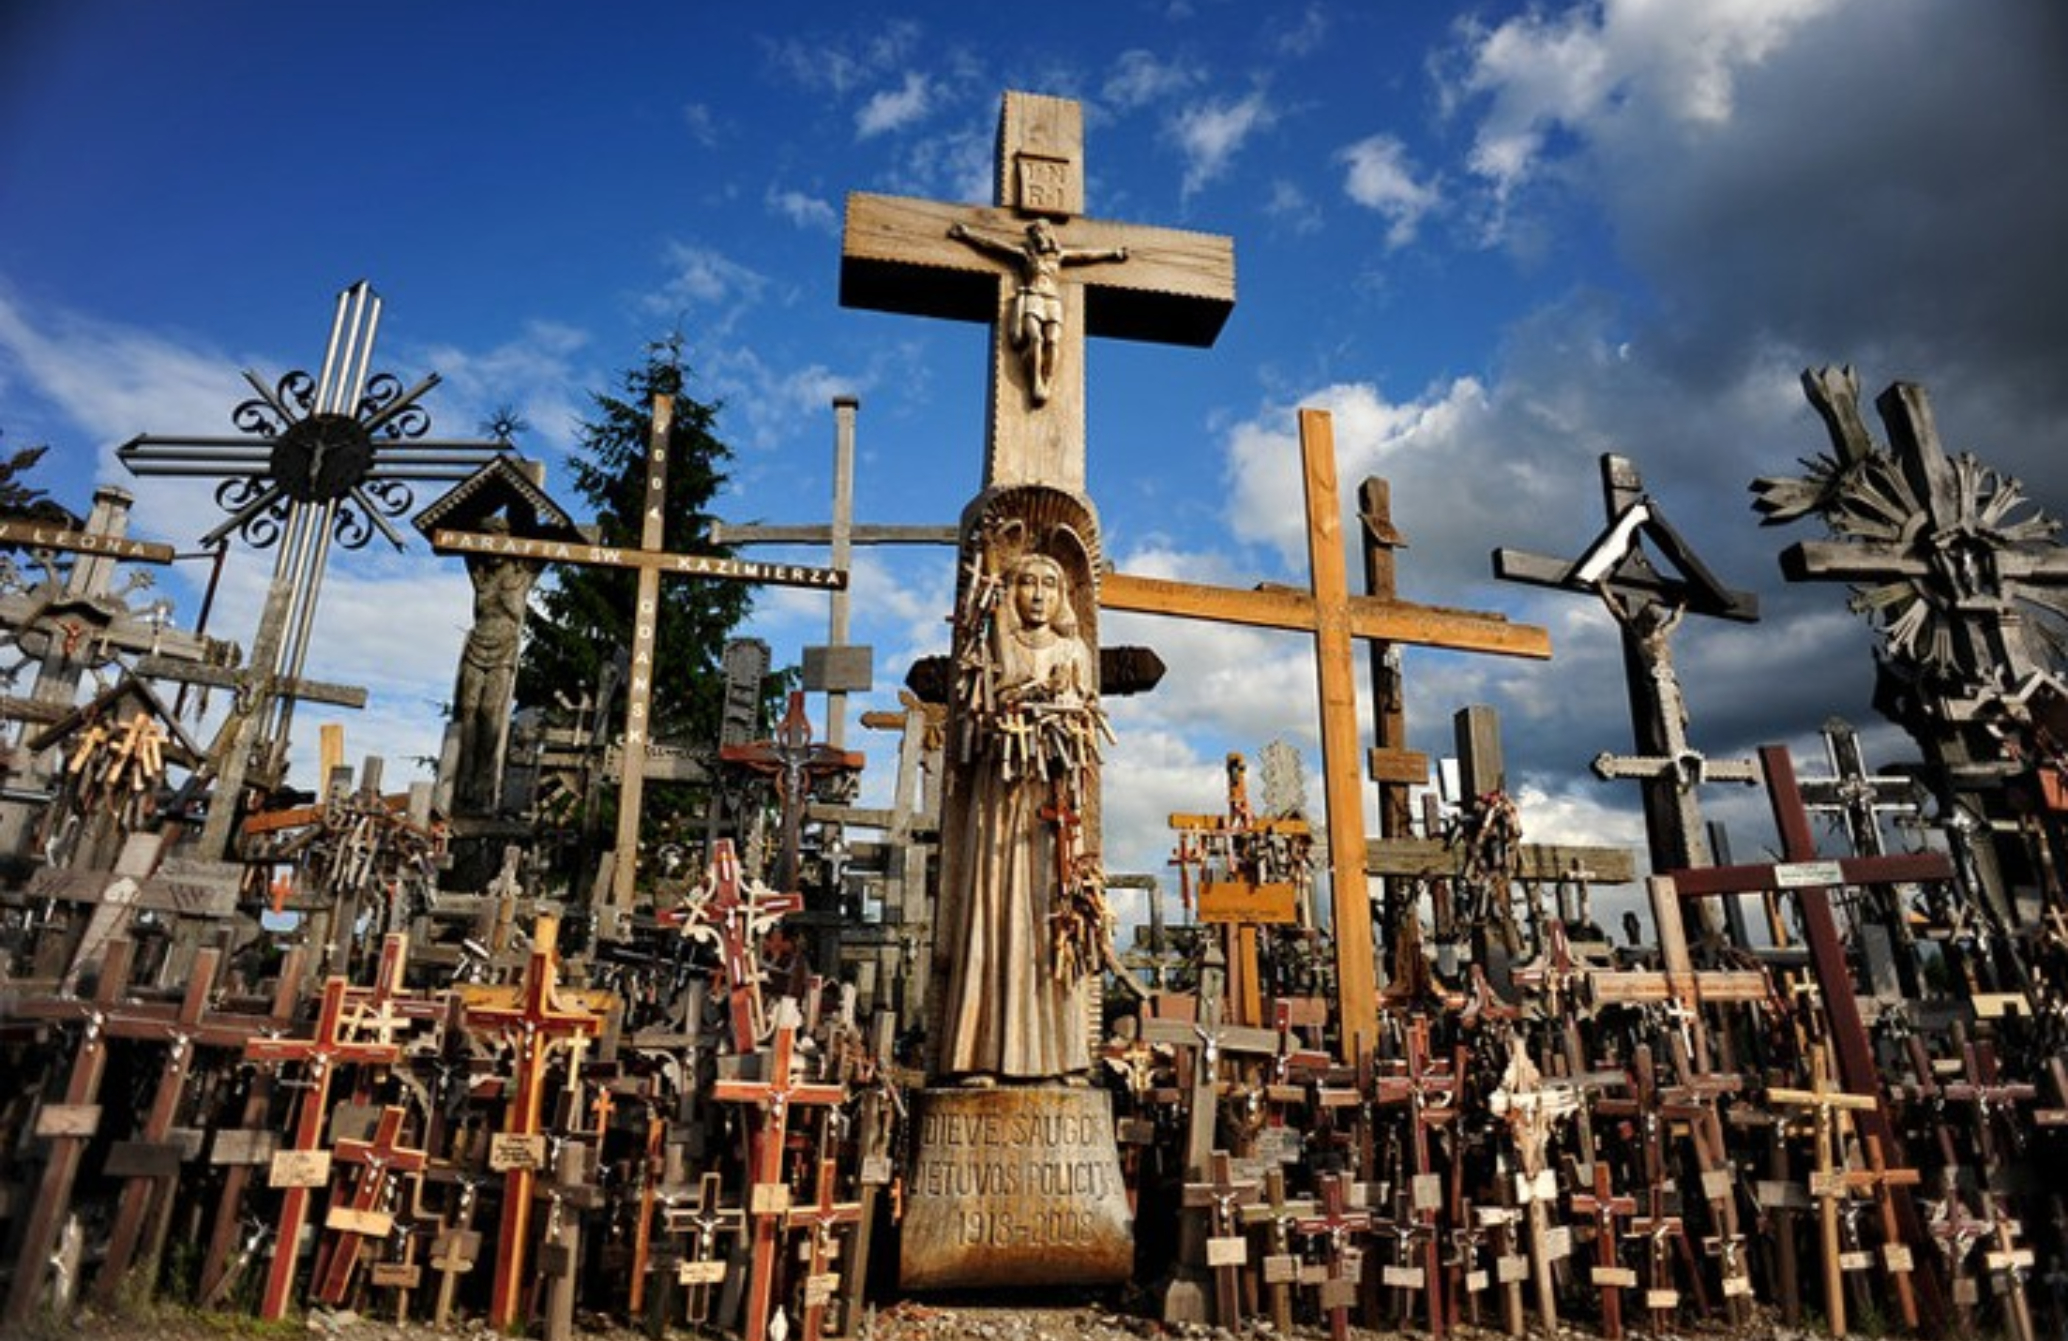 Ο λόφος των Σταυρών: Το ιερό σημείο προσκυνήματος στη Λιθουανία με τους 100.000 σταυρούς